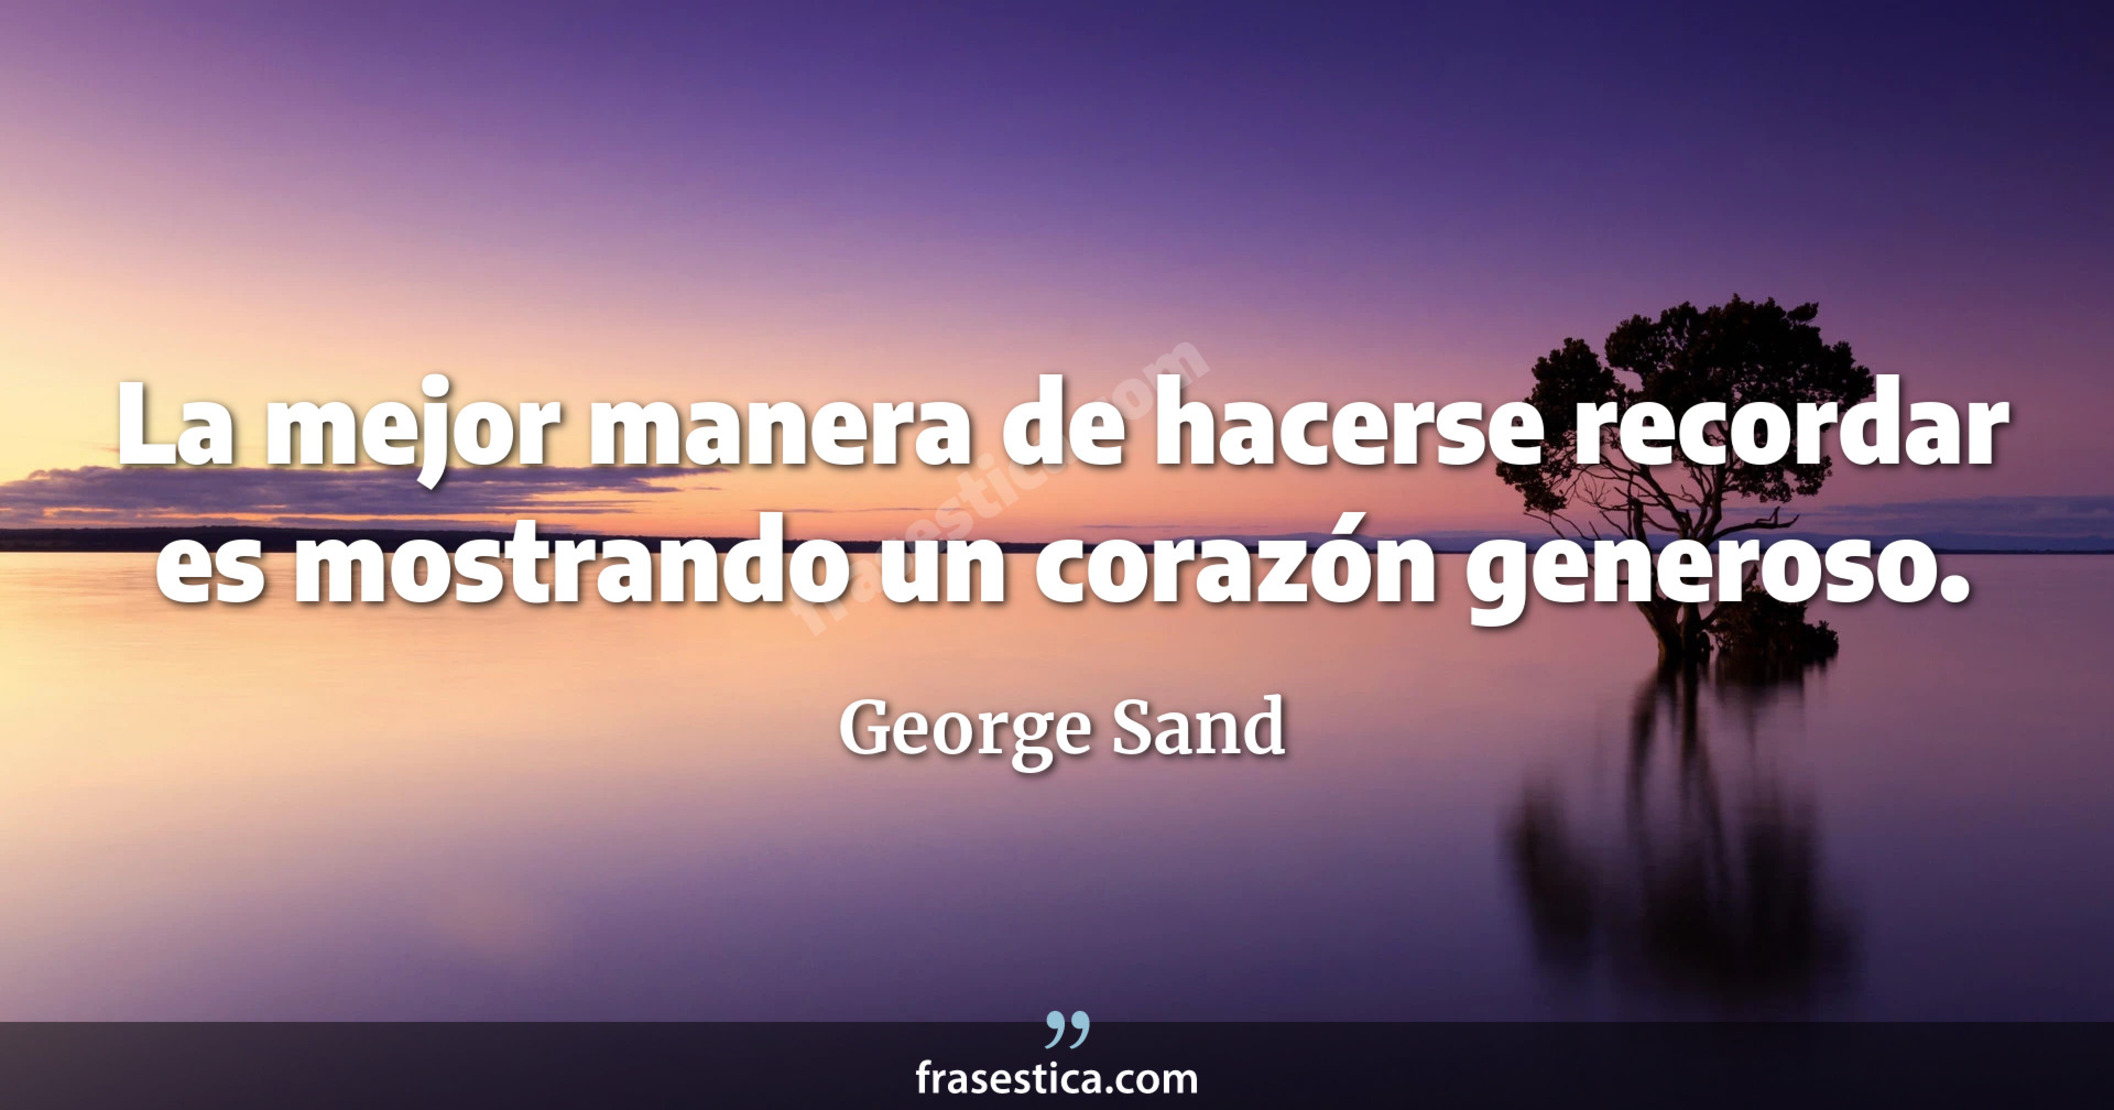 La mejor manera de hacerse recordar es mostrando un corazón generoso. - George Sand